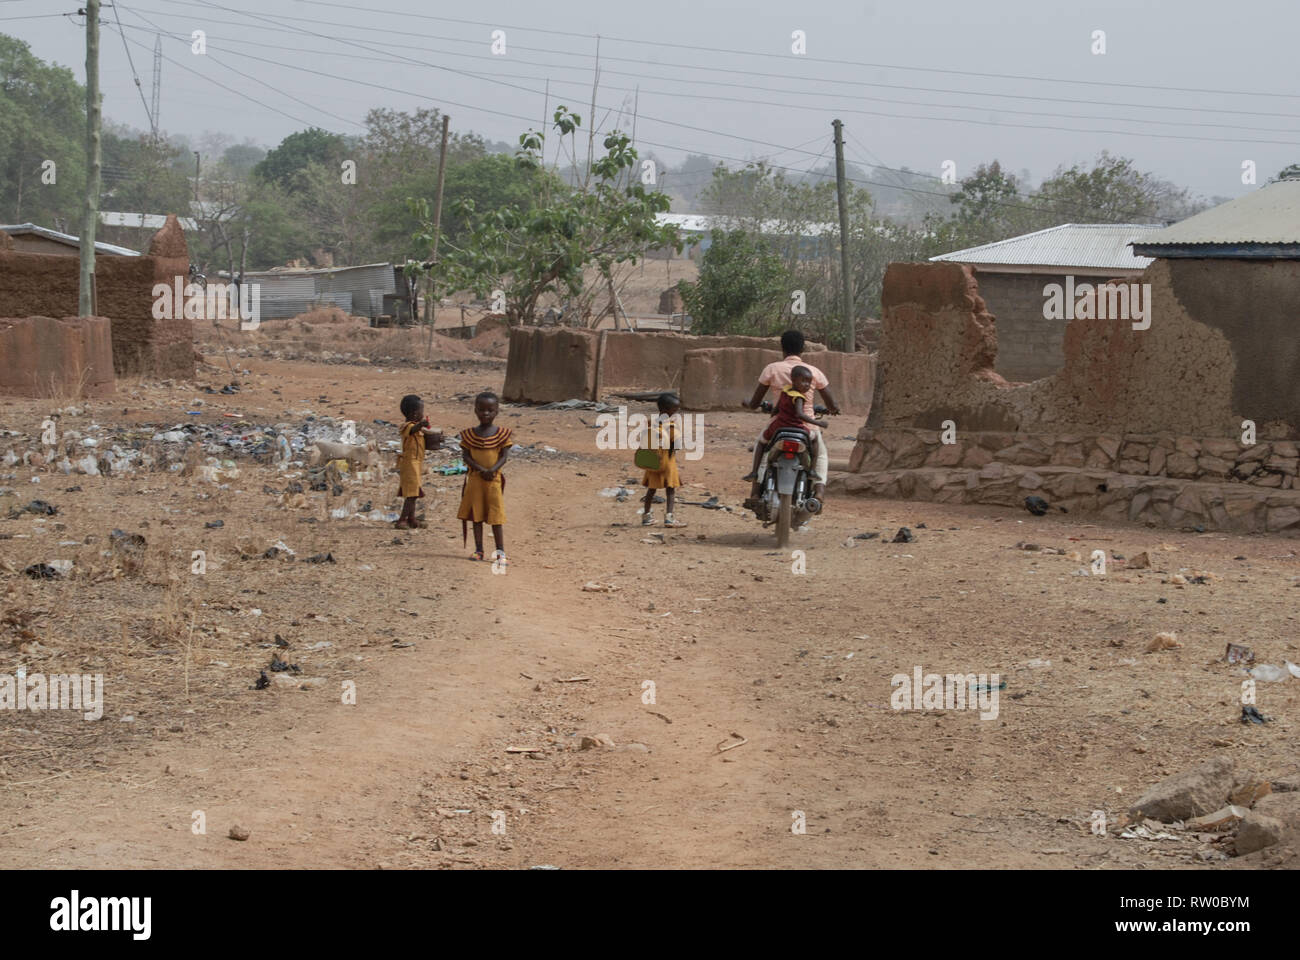 Une photo de l'école les enfants ghanéens marche sur une rue locale après une longue journée à l'école. Banque D'Images